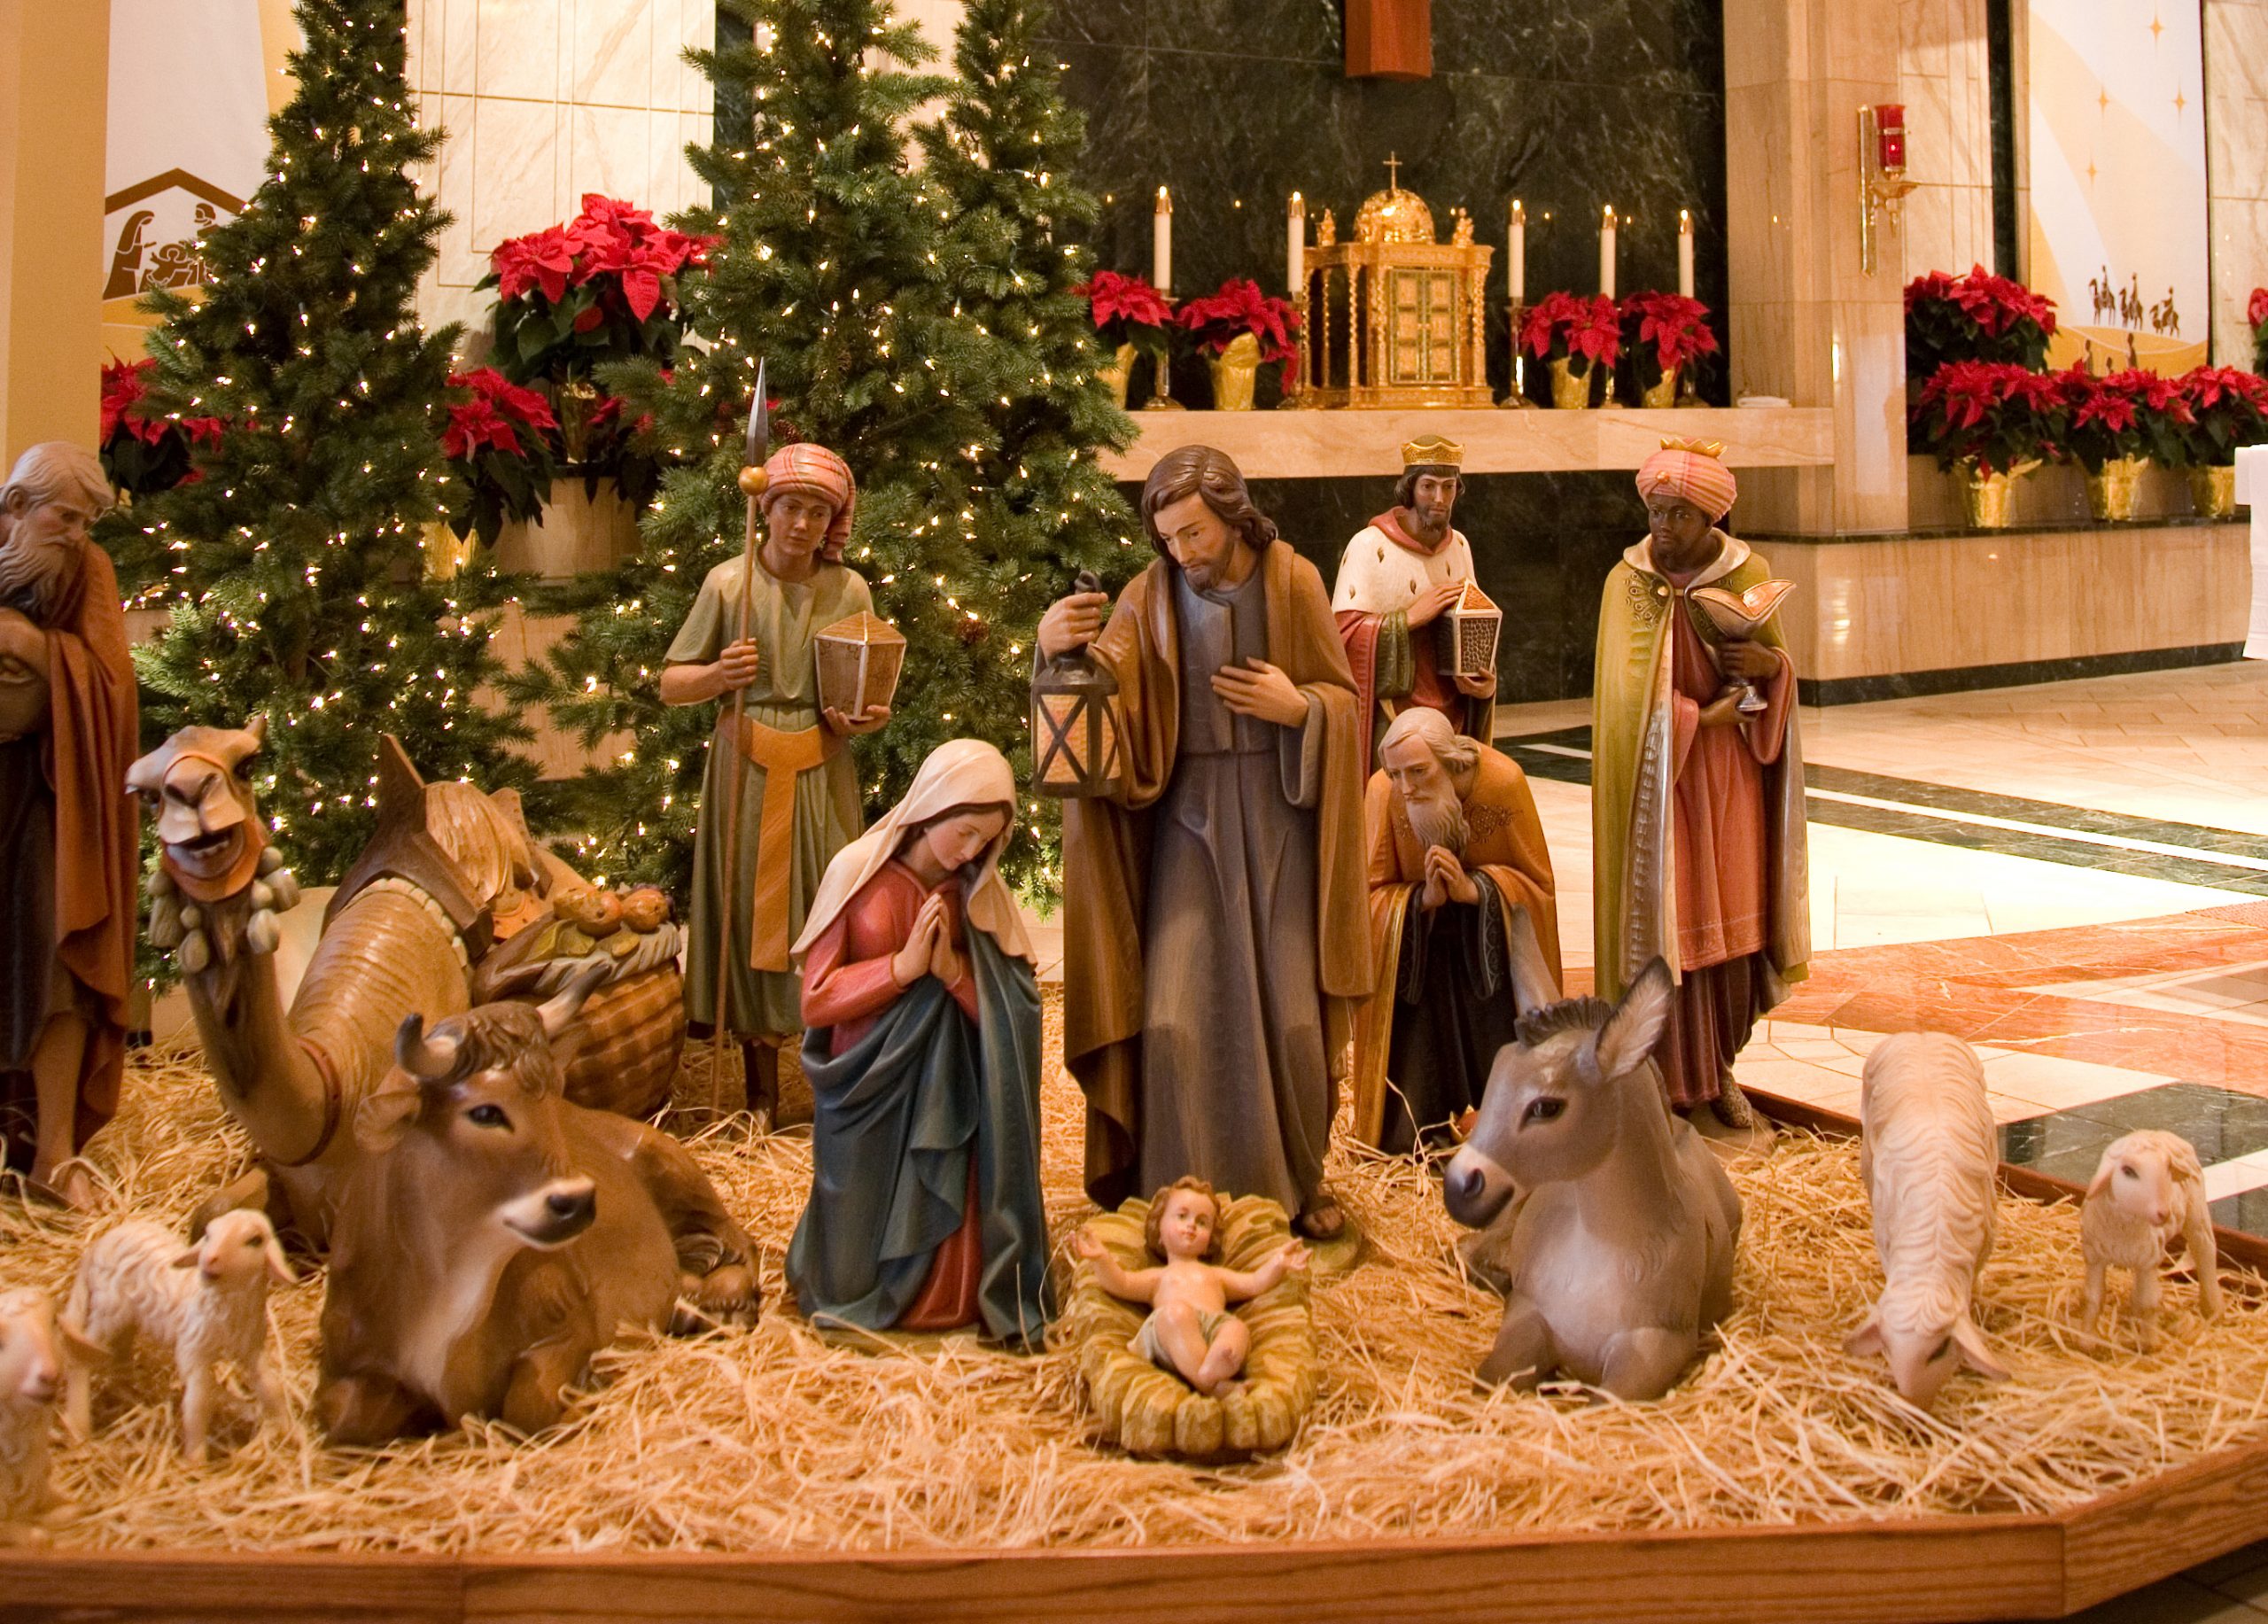 25 декабря 7 января. Рождество Христово (Christmas Day) — католицизм. С Рождеством католическим. Рождество у католиков. Католическое Рождество в Германии.